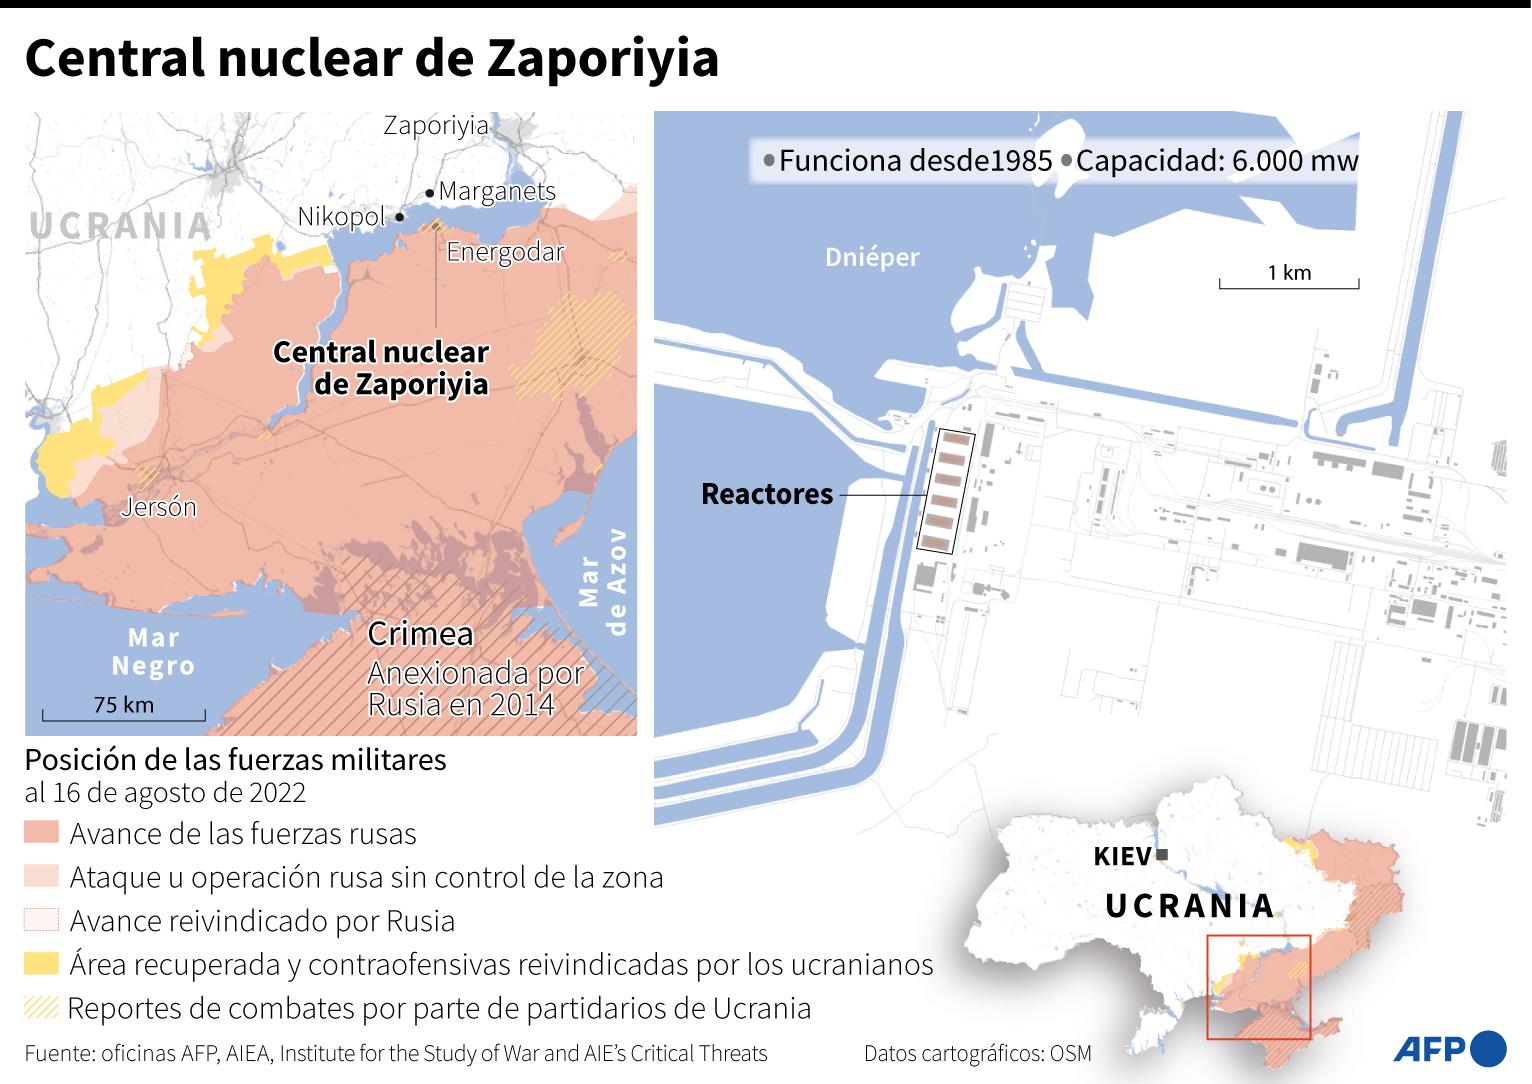 La OTAN reclama inspección “urgente” de central nuclear ucraniana de Zaporiyia